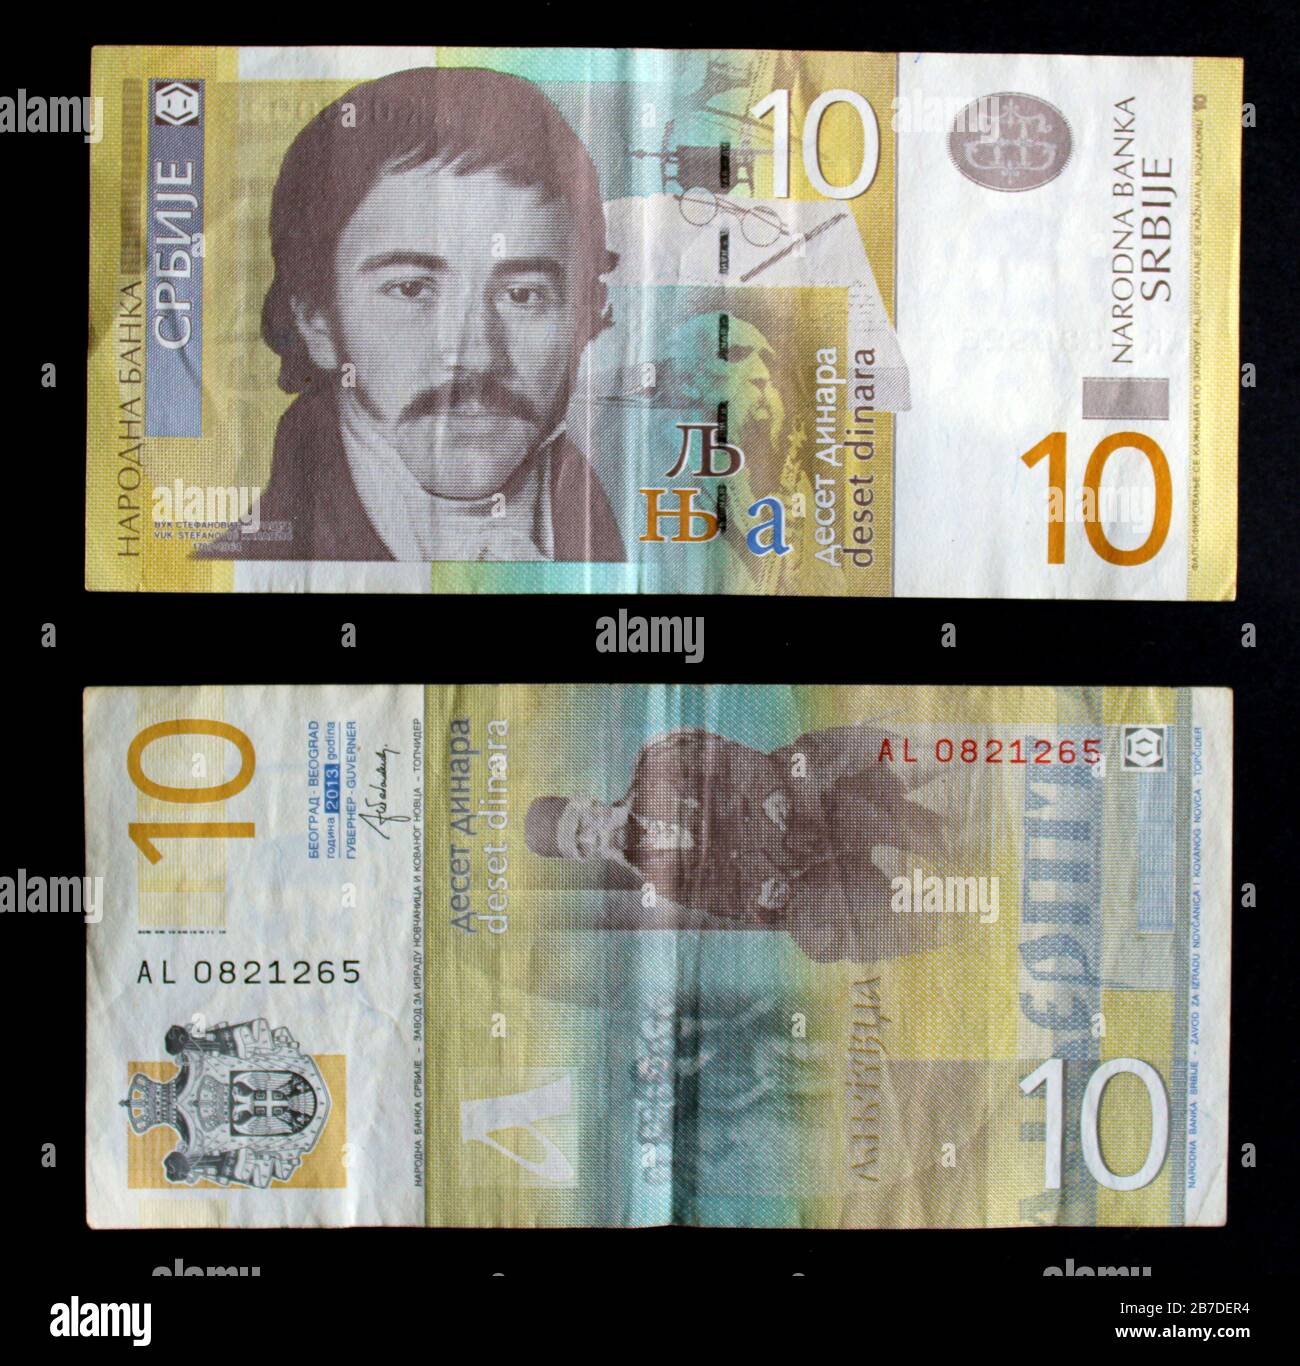 Lot mix od Serbian banknotes 10 dinars 20 dinars 50 dinars 100 dinars 200 dinars